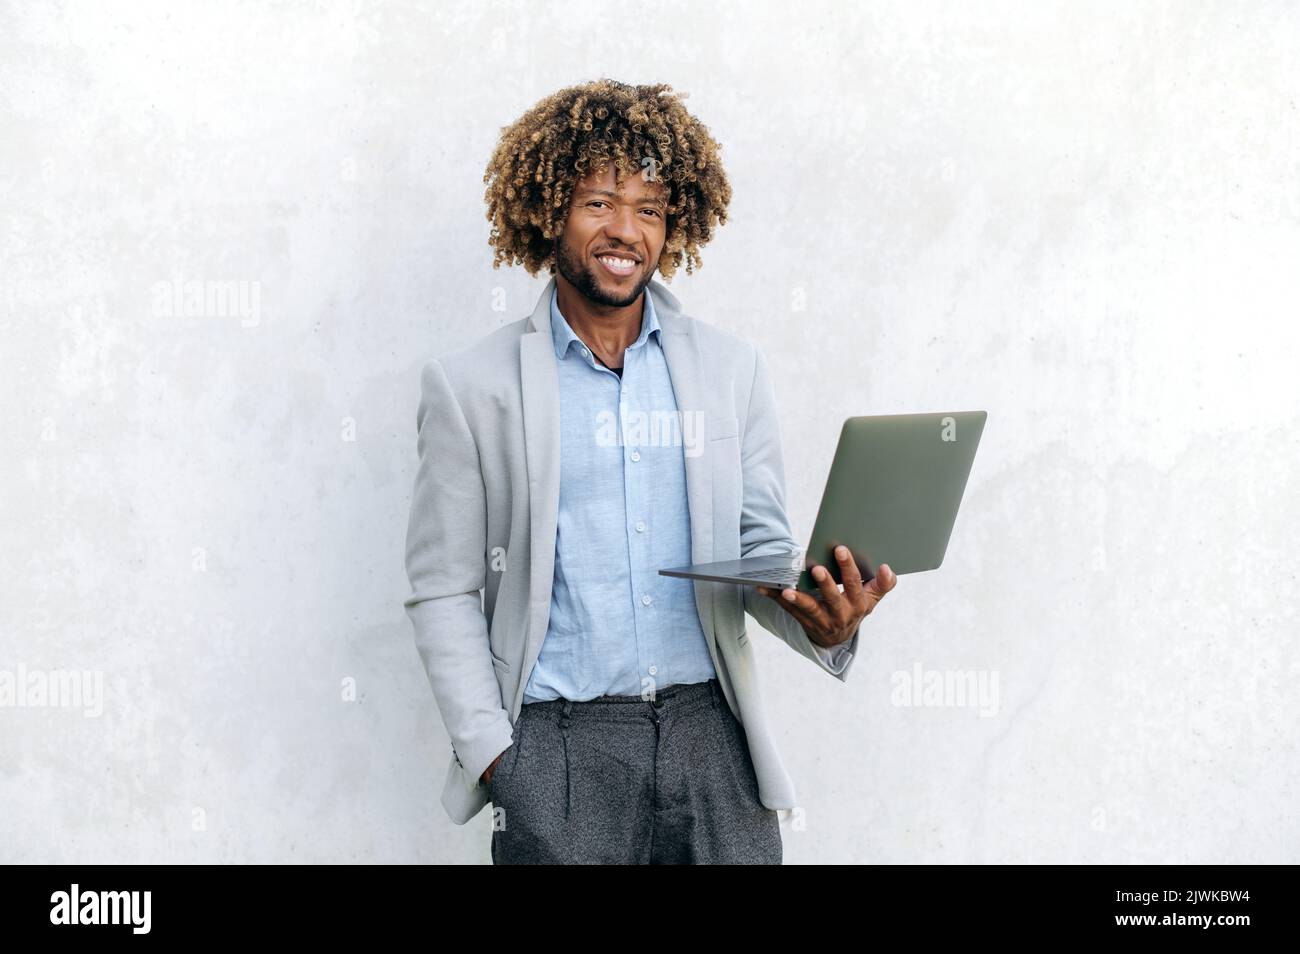 Foto des selbstbewussten intelligenten positiven erfolgreichen lockigen gemischthaarigen Geschäftsmanns, elegant gekleidet, mit offenem Laptop in der Hand, steht auf isoliertem Hintergrund, blickt auf die Kamera, lächelt freundlich Stockfoto